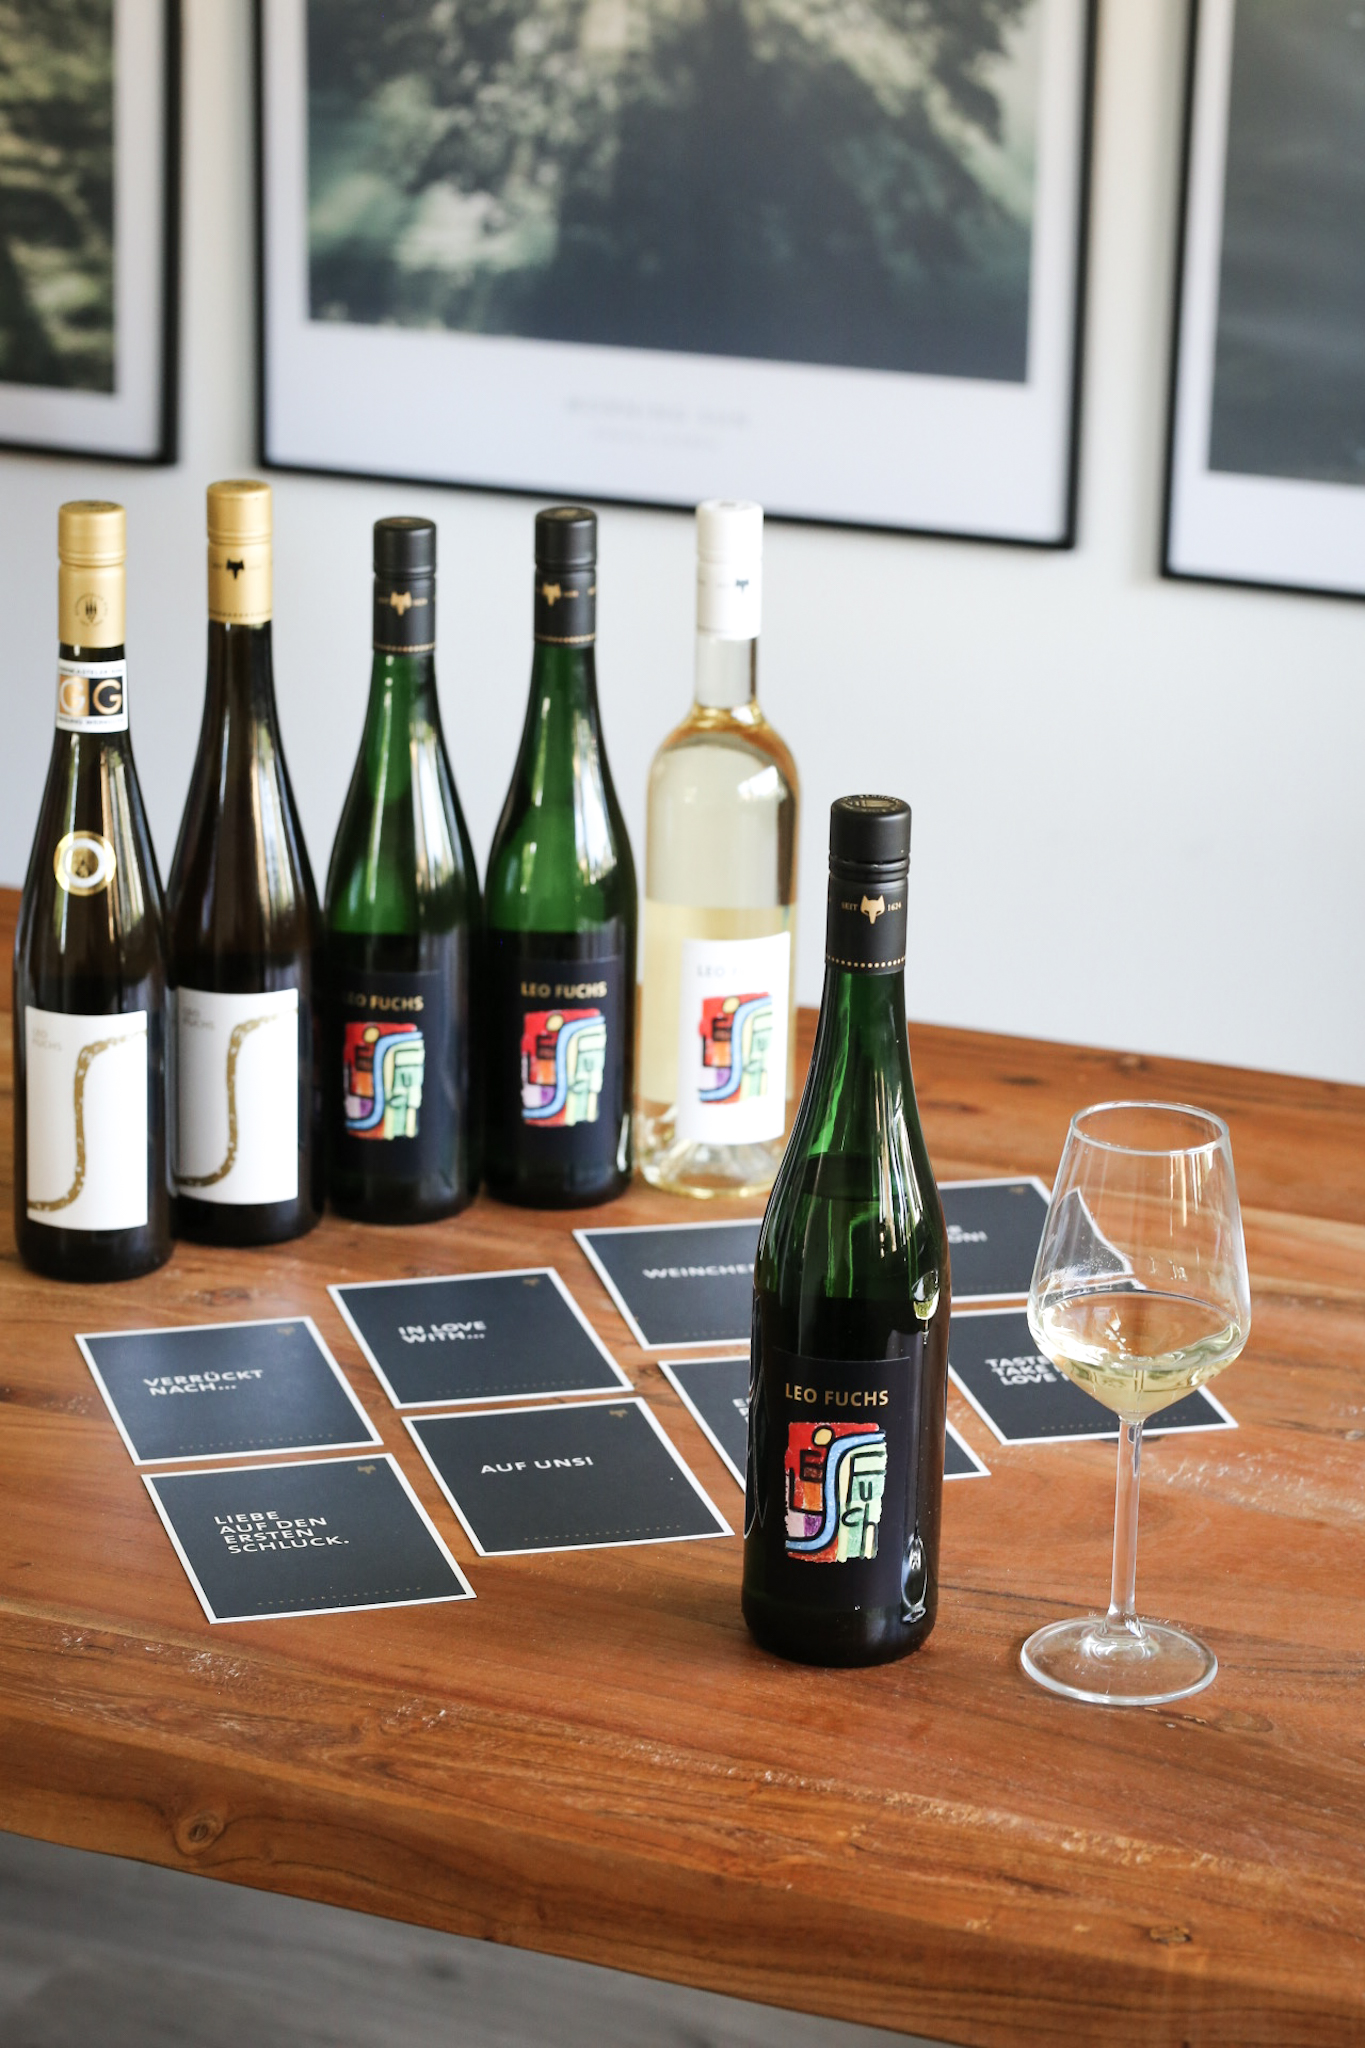 Gelebte Tradition trifft auf Moderne im Weingut LEO FUCHS Riesling Mosel Wein Weißburgunder Moseltal Schiefer